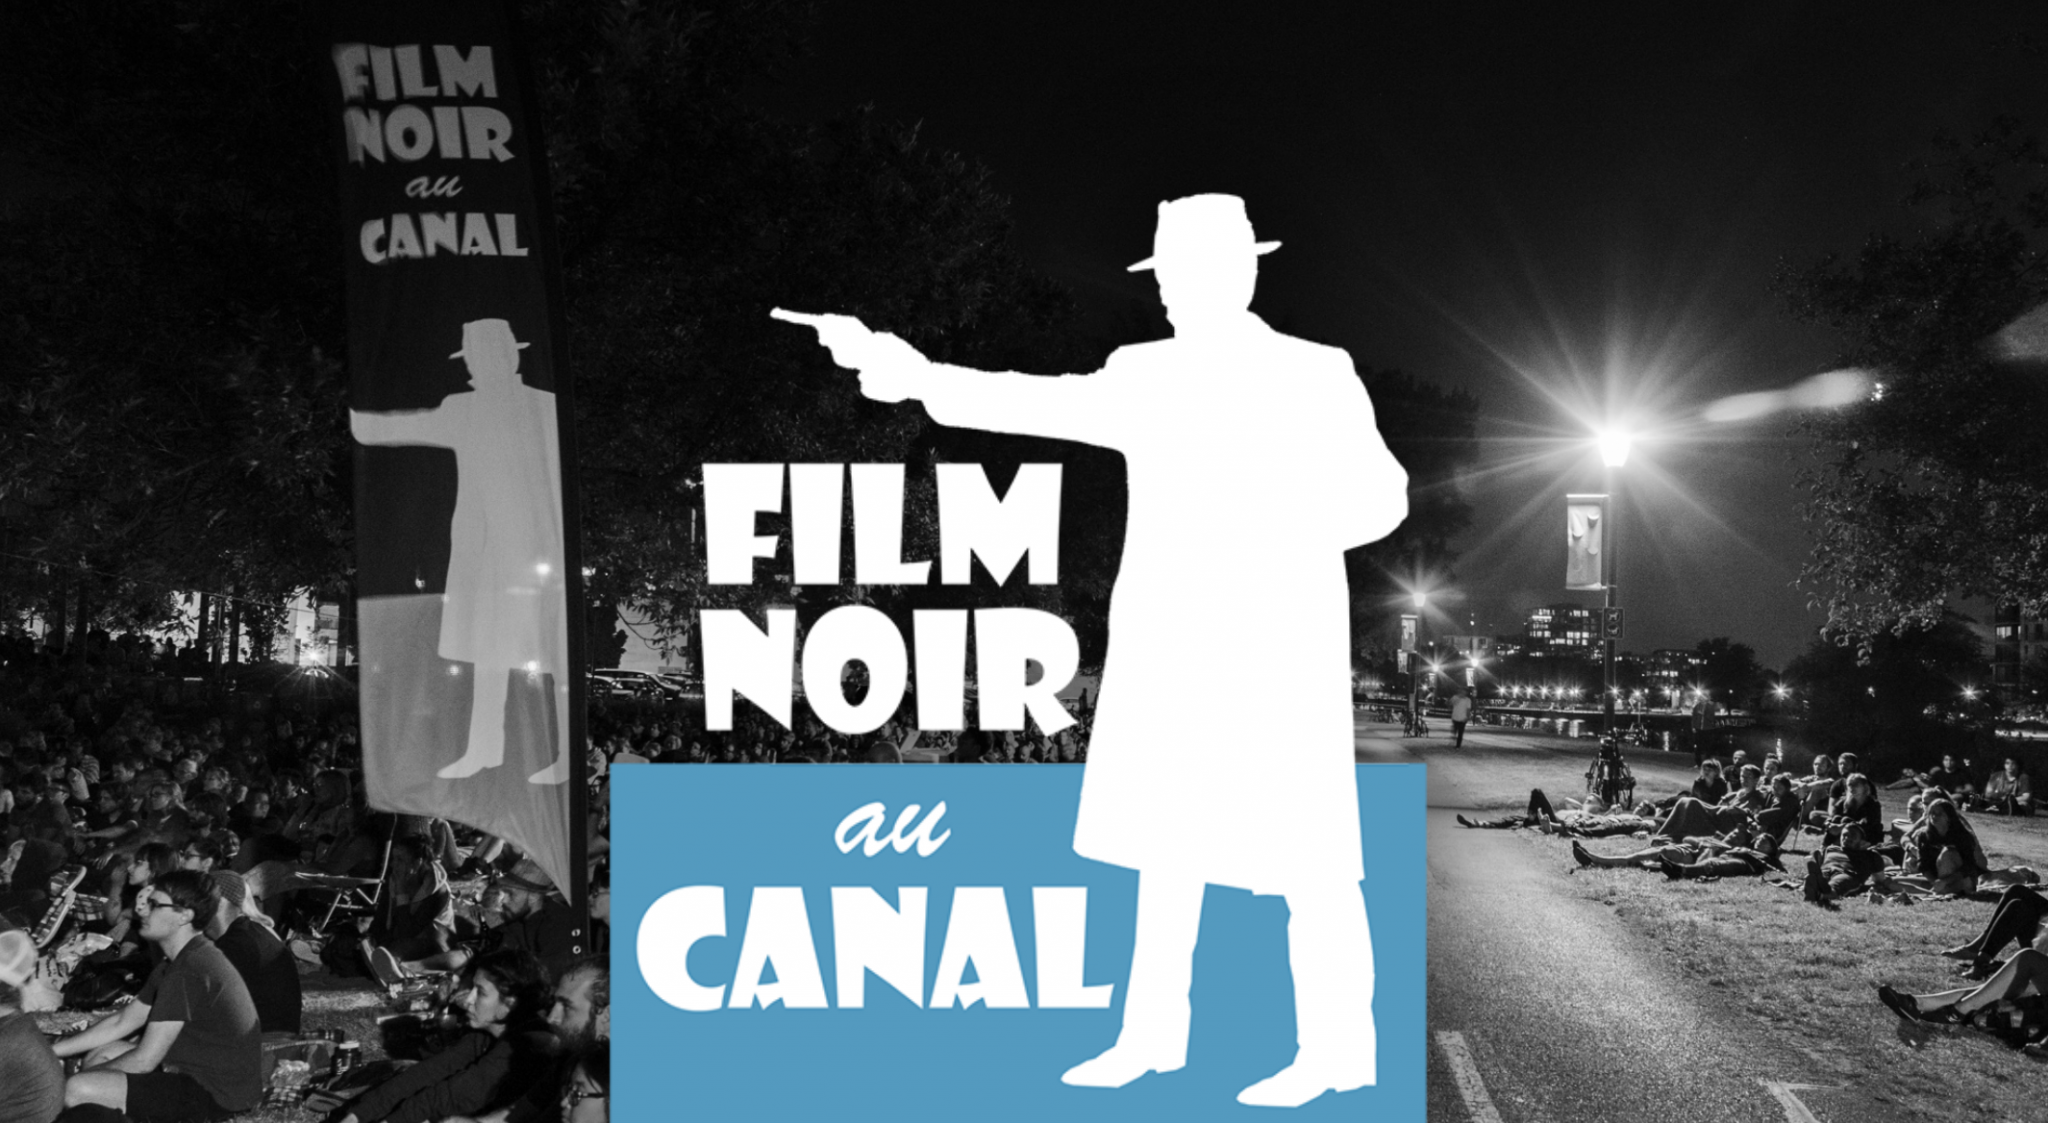 Film Noir au Canal : « Le Corbeau » de Henri-Georges Clouzot présenté ce dimanche 29 juillet